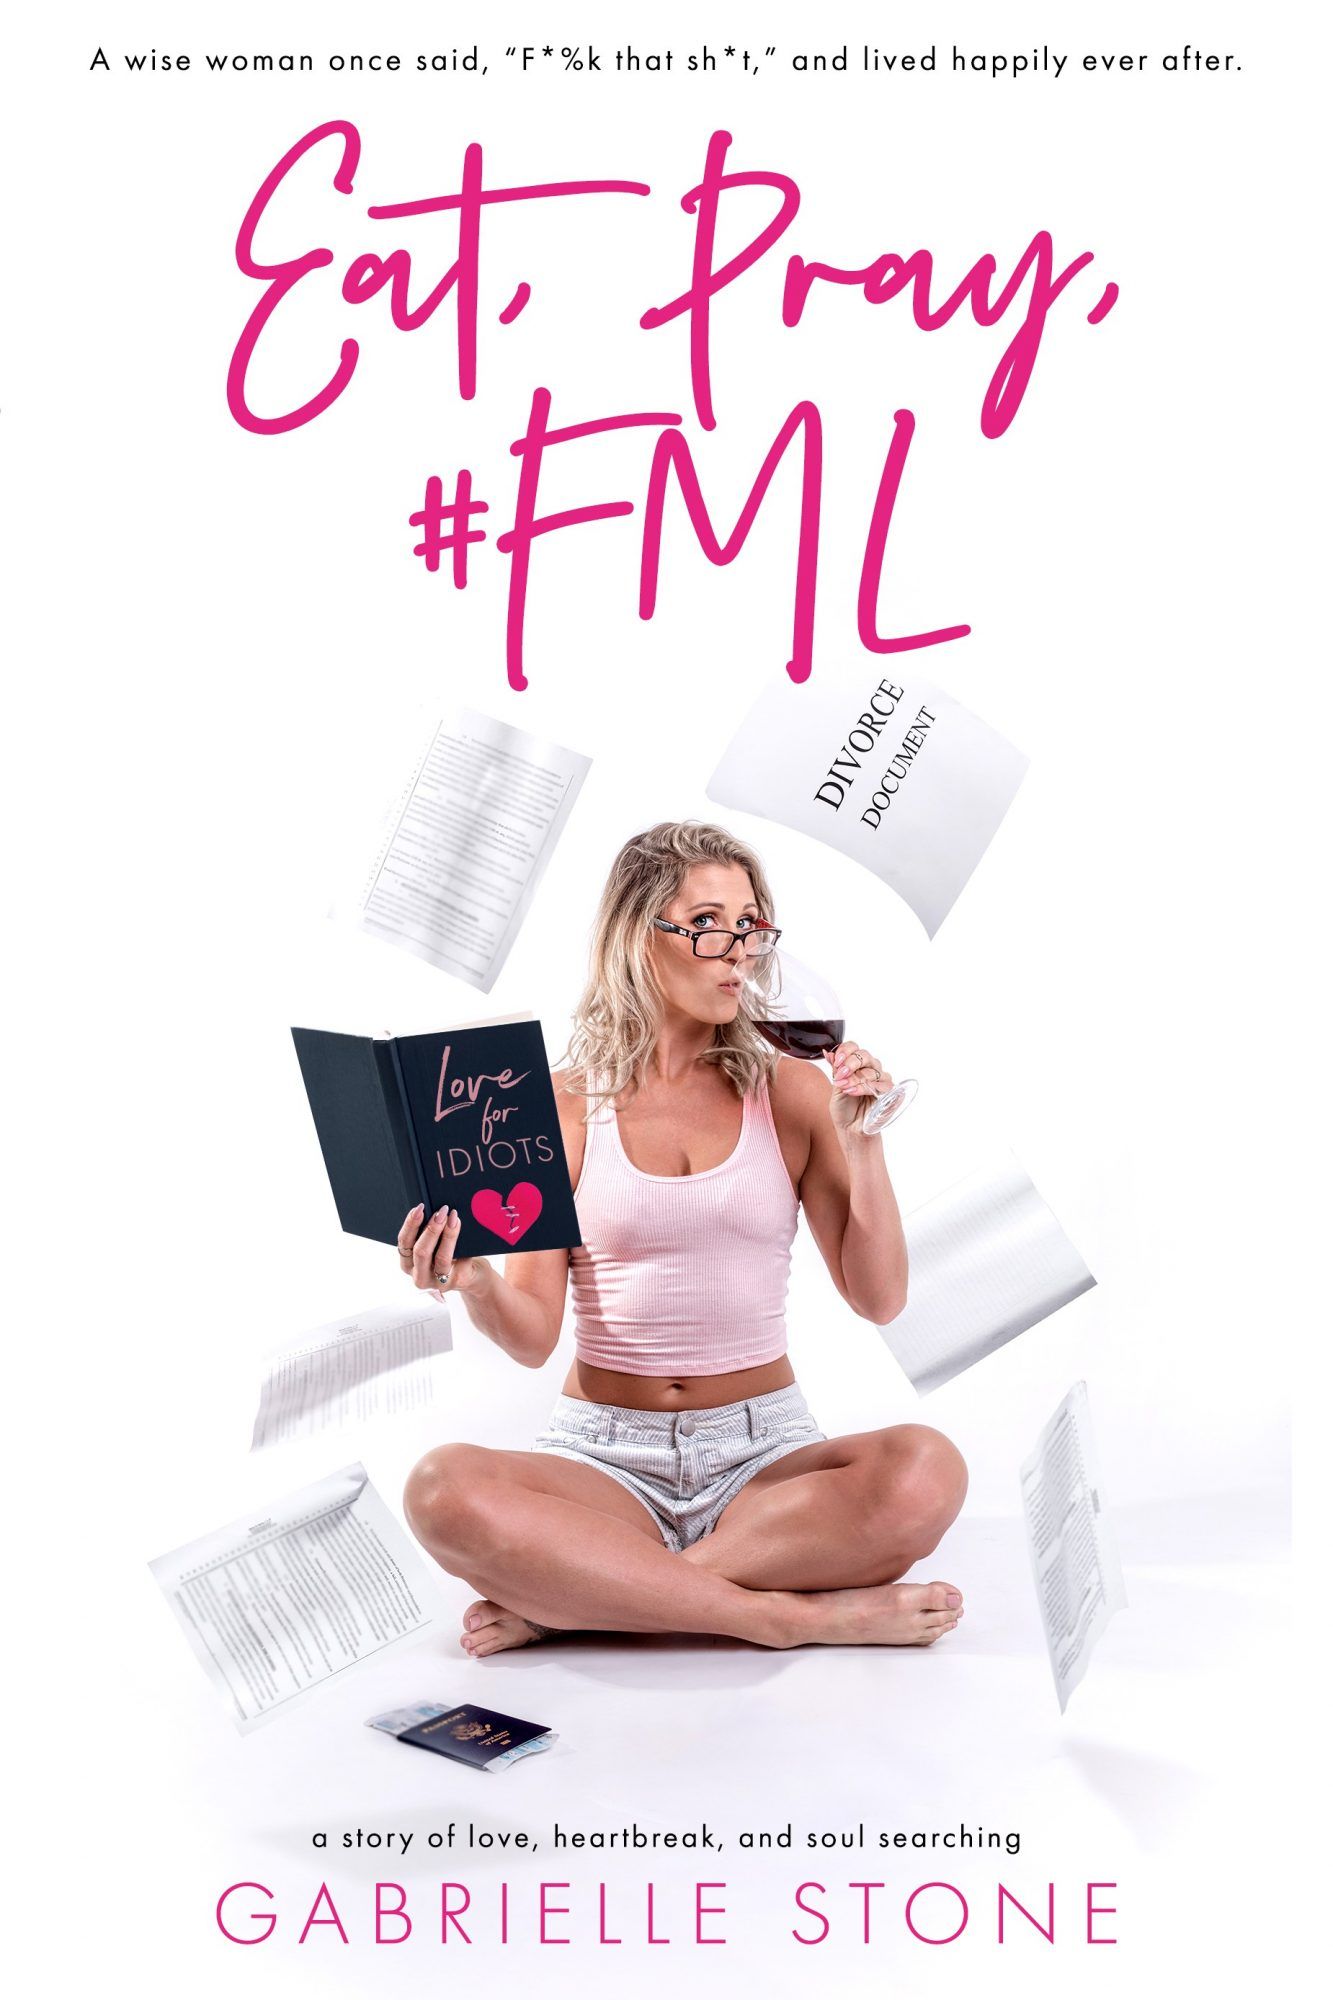 Knjige o samohrani, jedi, moli, #FML